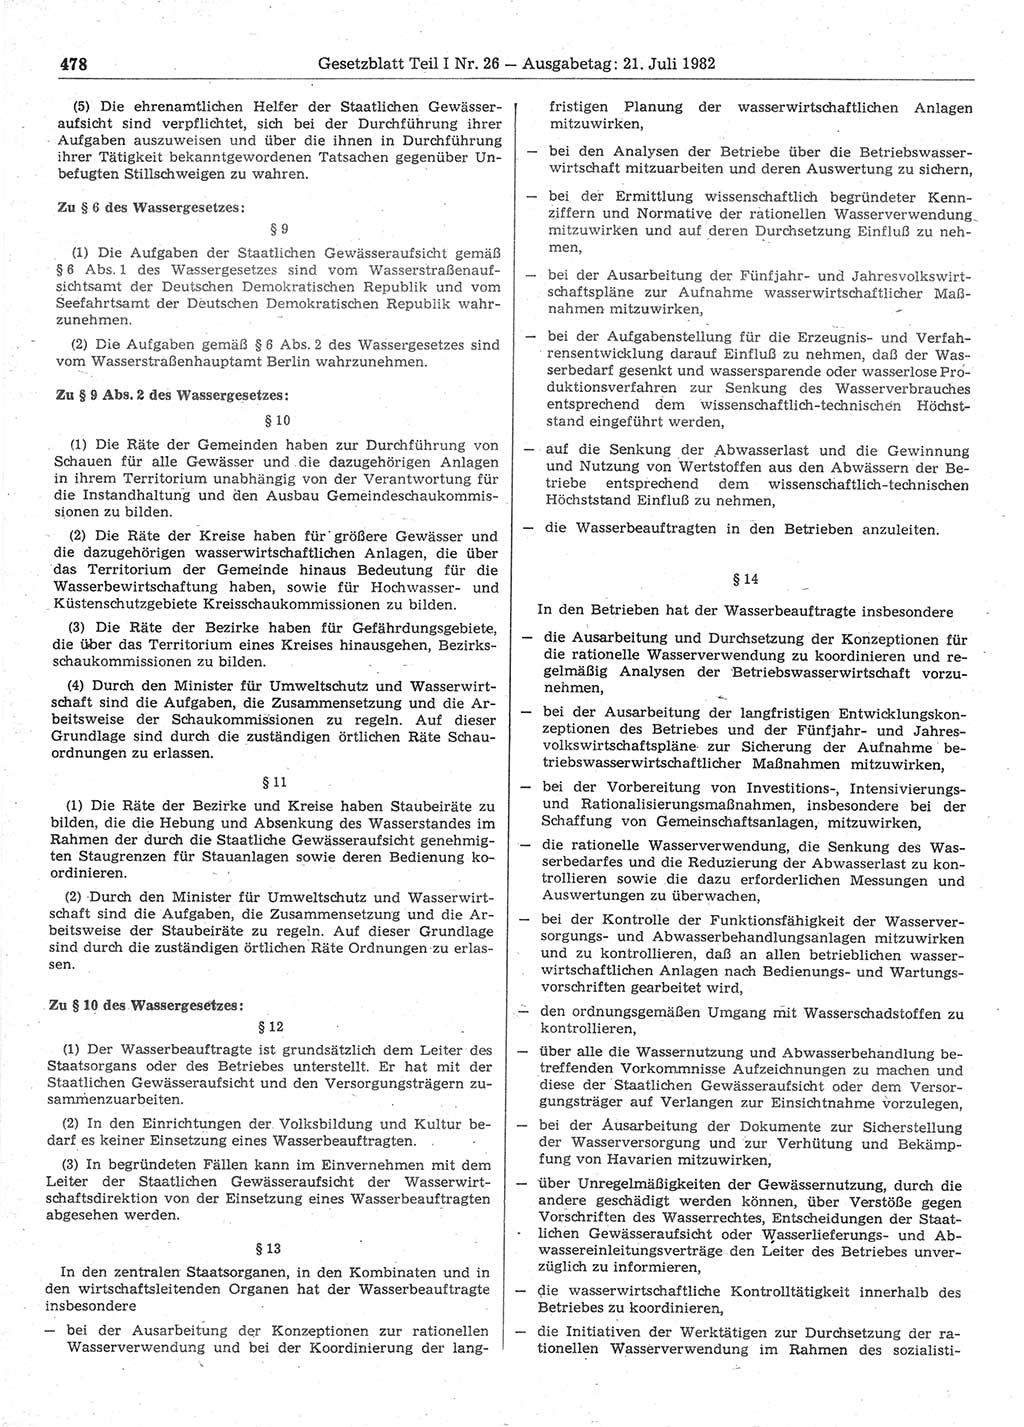 Gesetzblatt (GBl.) der Deutschen Demokratischen Republik (DDR) Teil Ⅰ 1982, Seite 478 (GBl. DDR Ⅰ 1982, S. 478)